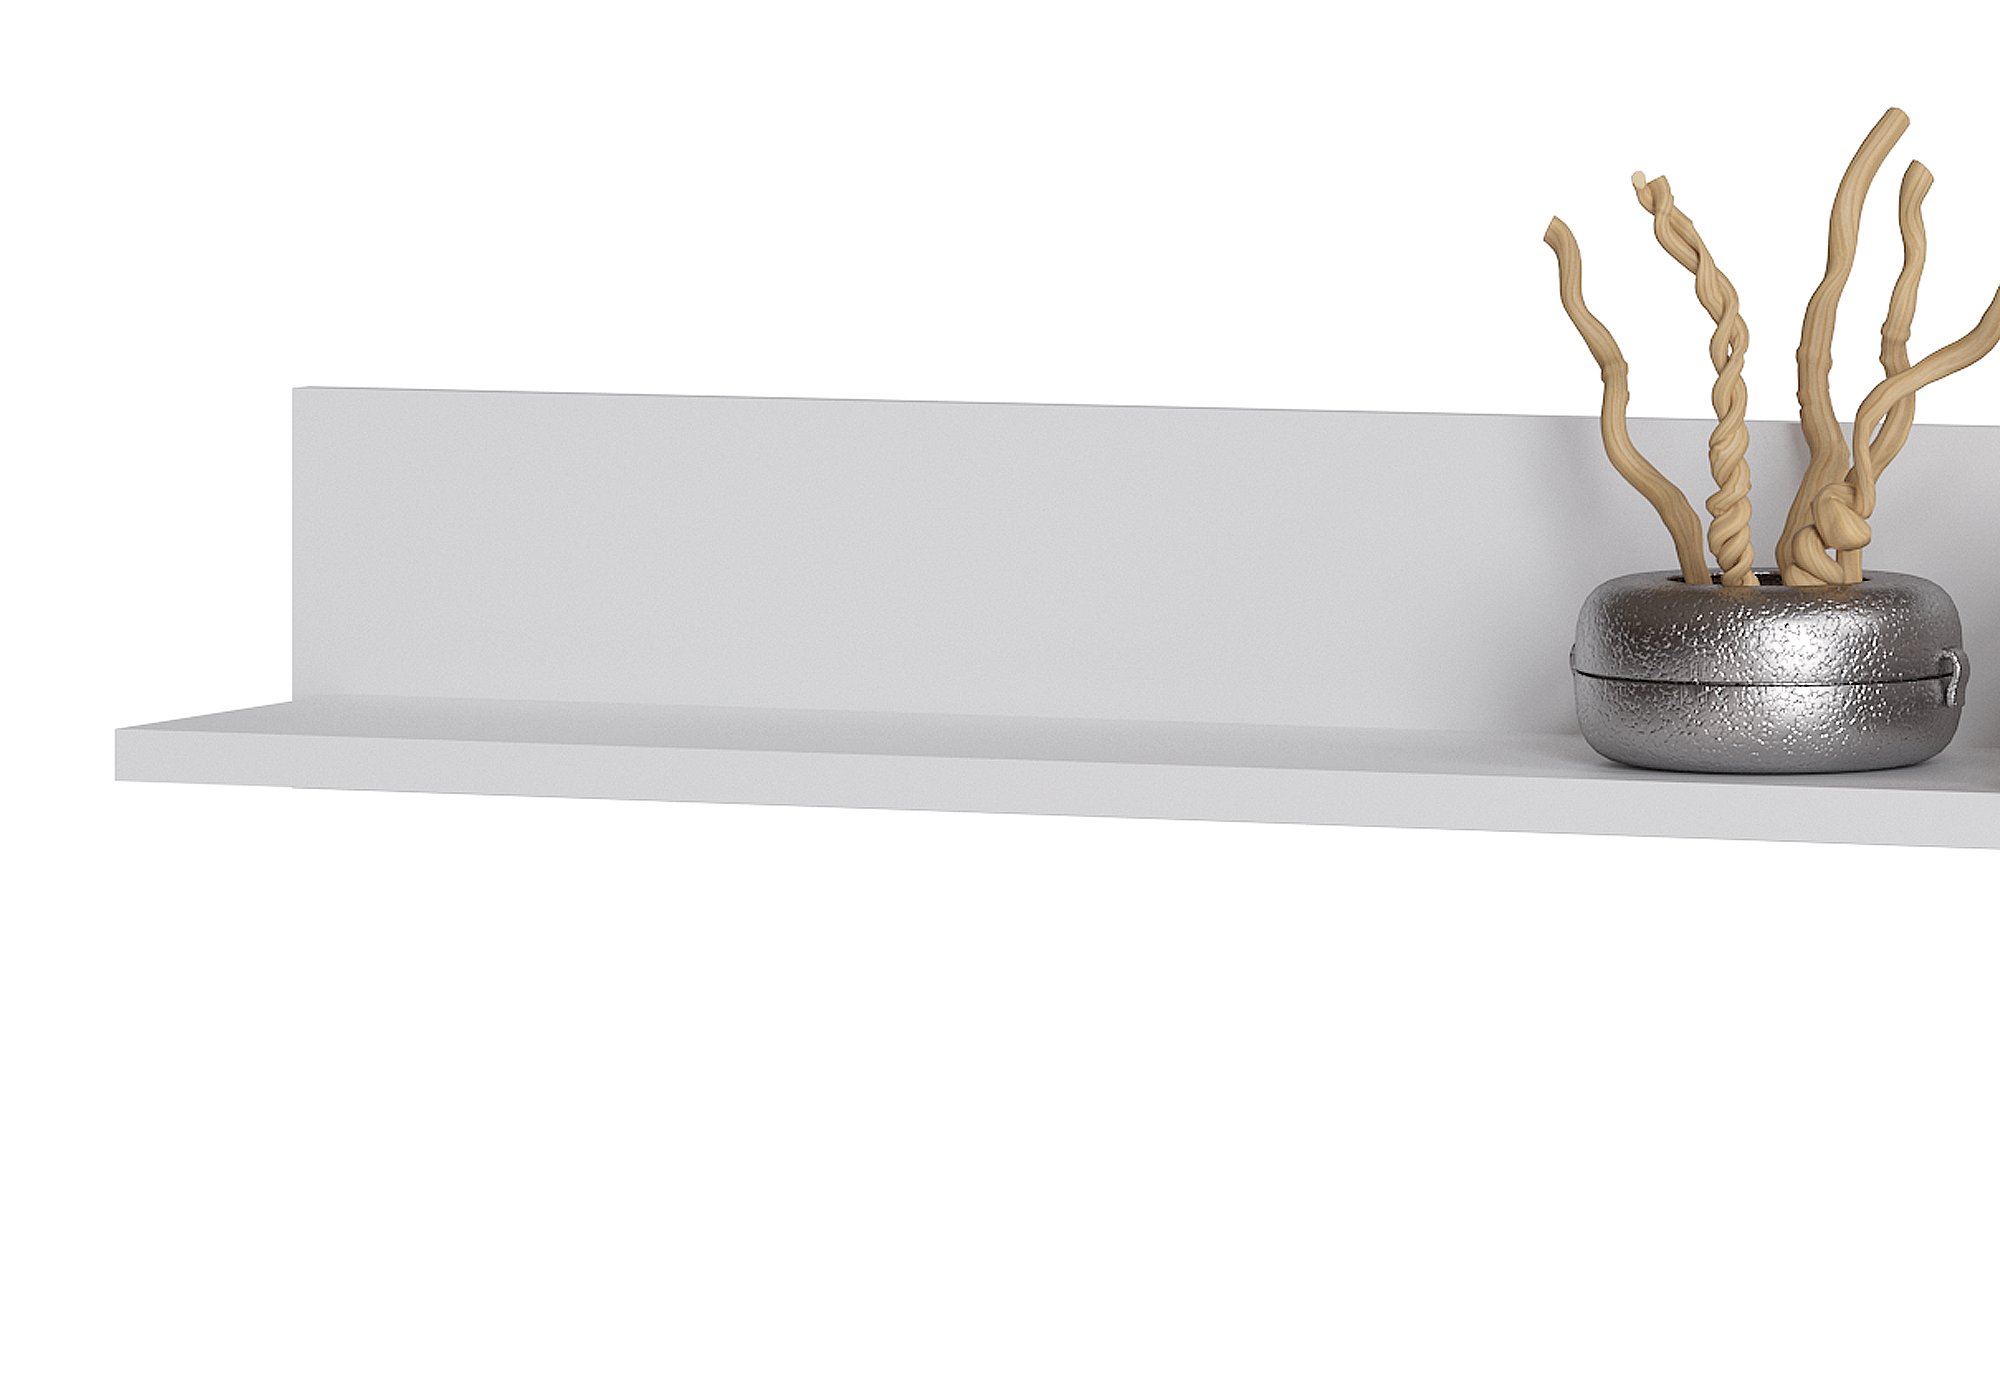 Wandboard alpinweiß - weiß hochglanz 136 cm - COLMAR